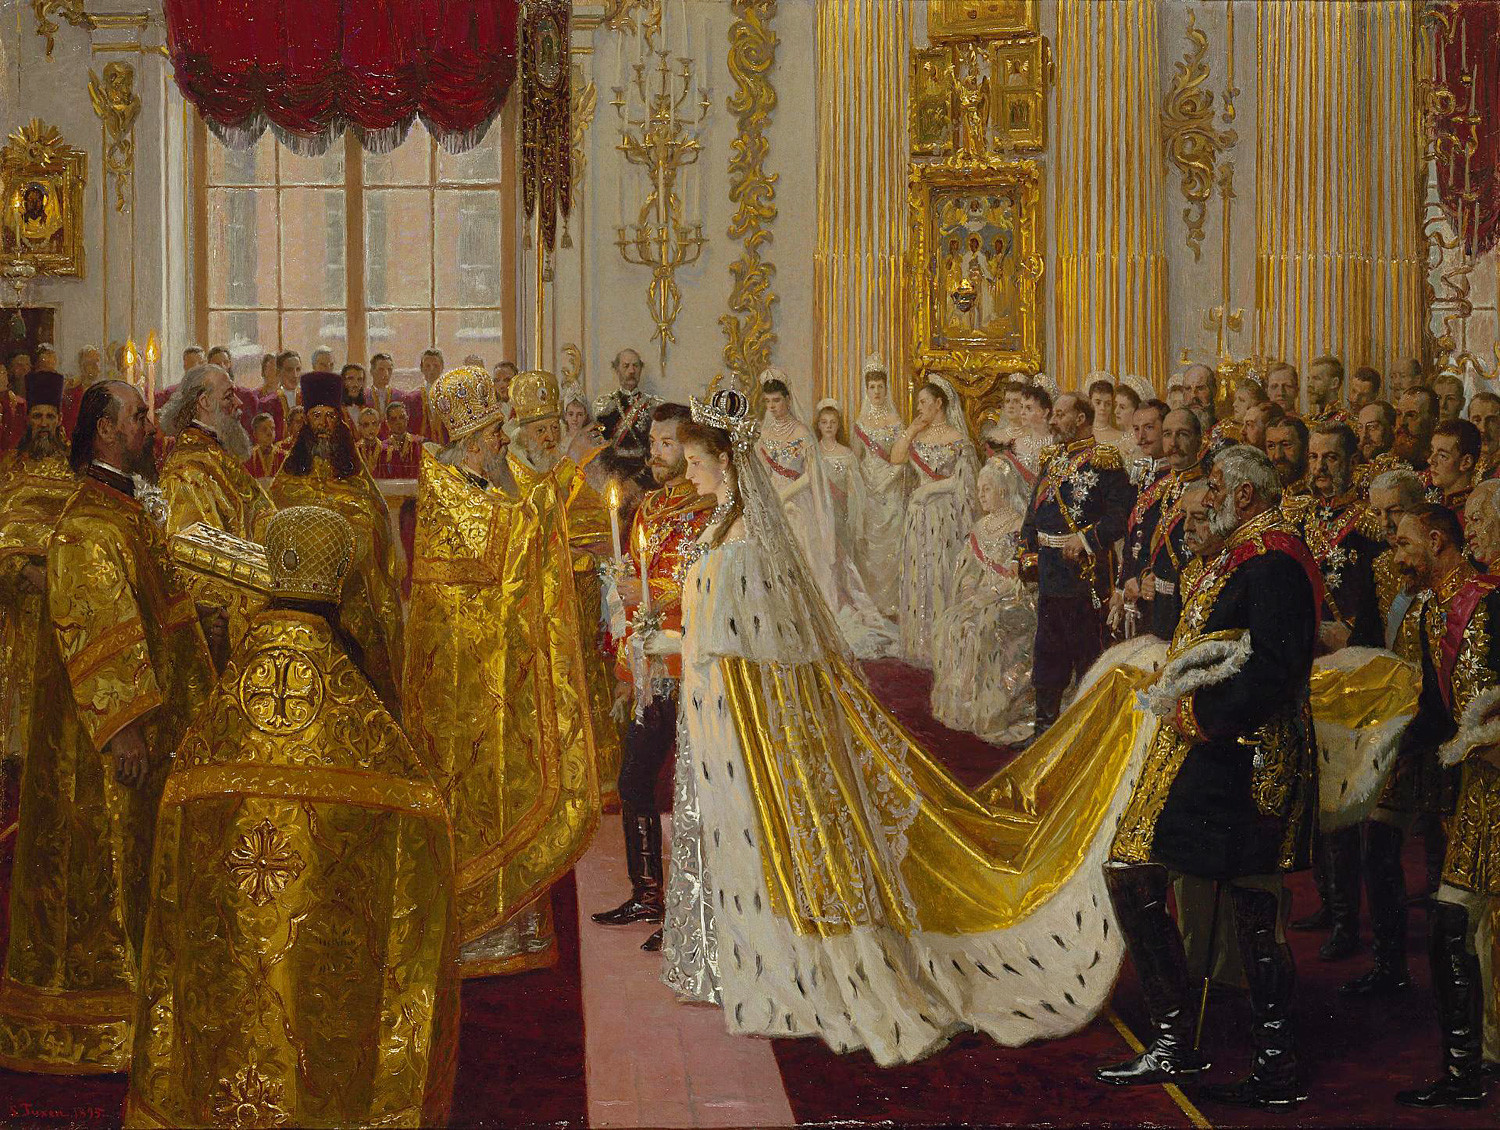 Il matrimonio di Nicola II e Aleksandra Feodorovna